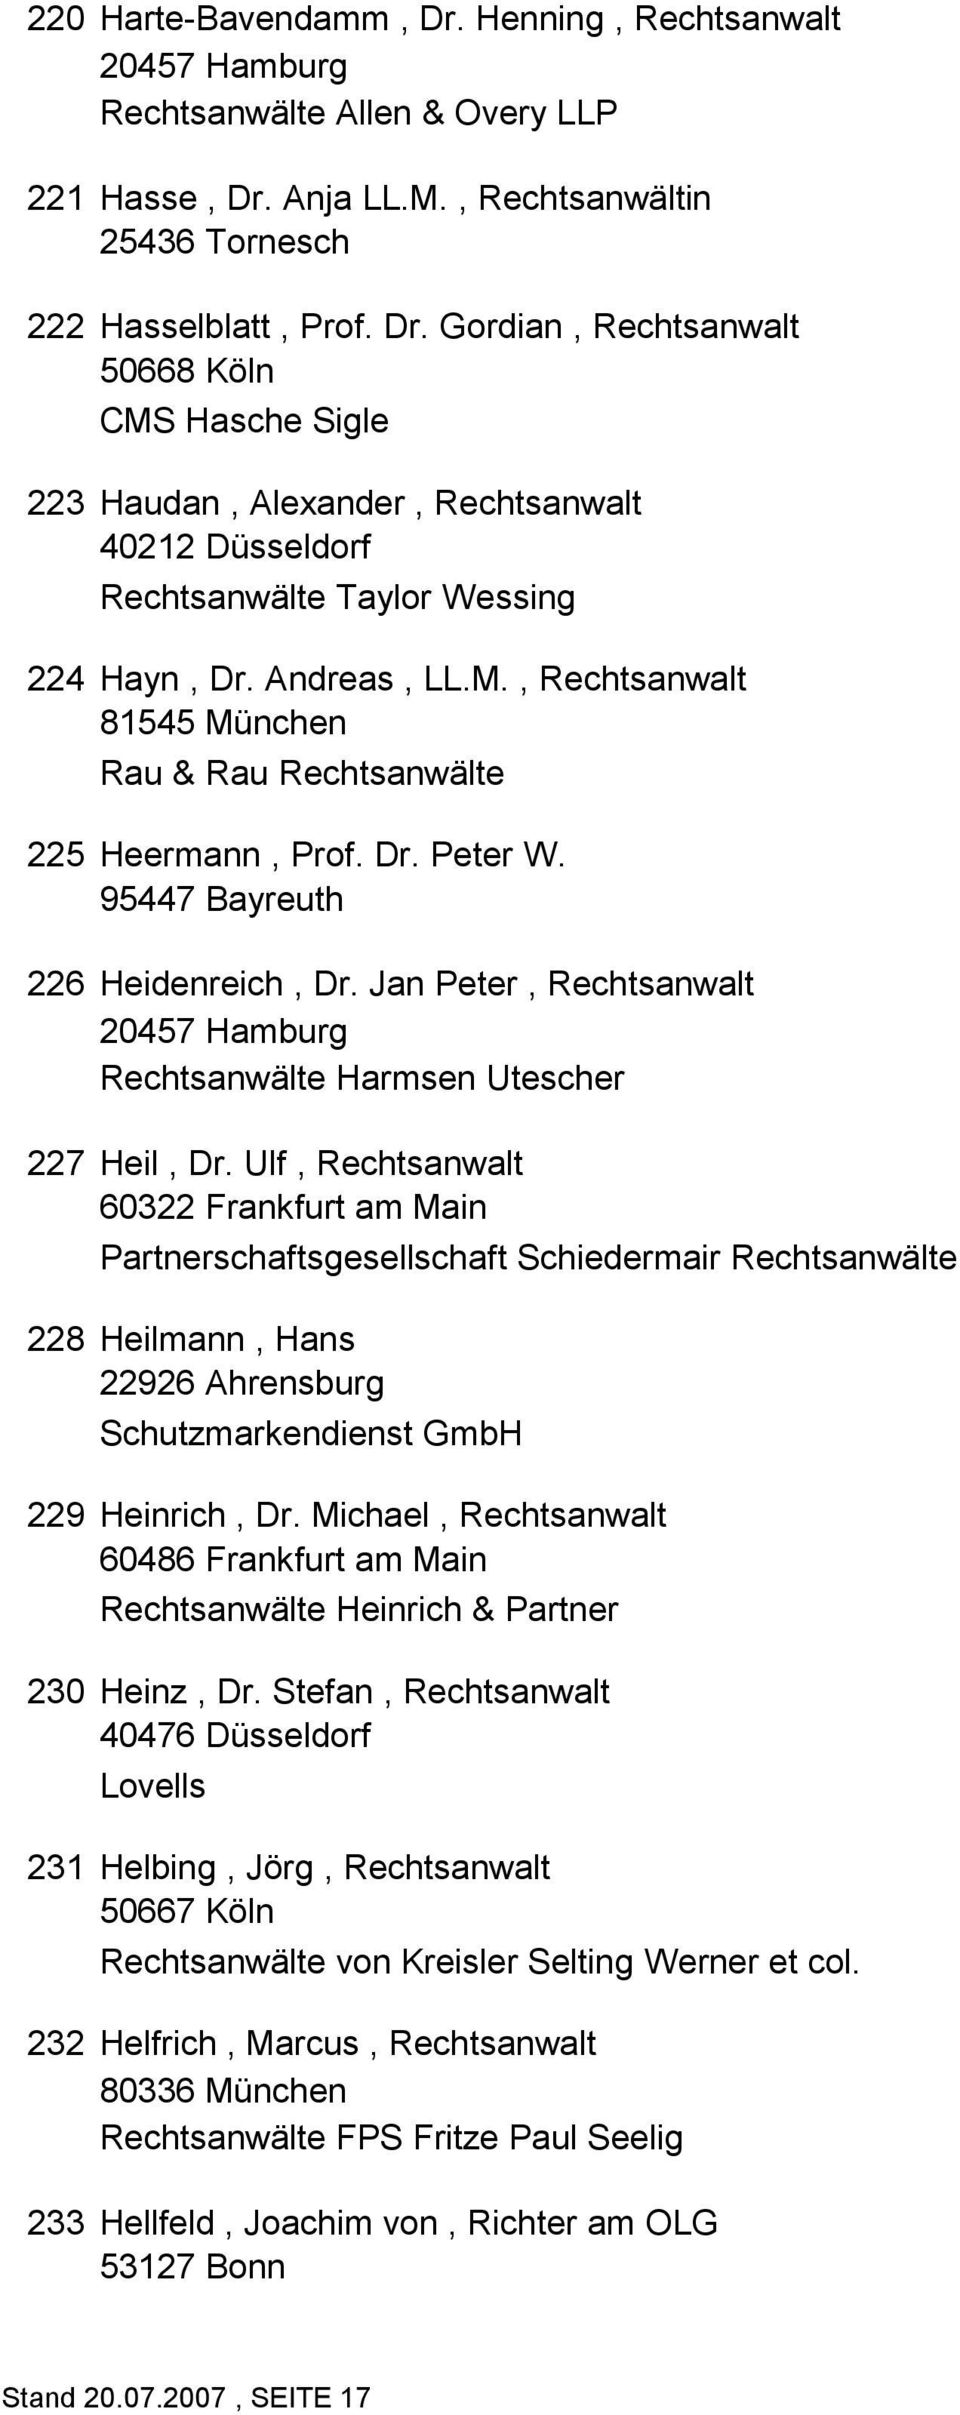 Jan Peter, Rechtsanwalt 20457 Hamburg Rechtsanwälte Harmsen Utescher 227 Heil, Dr.